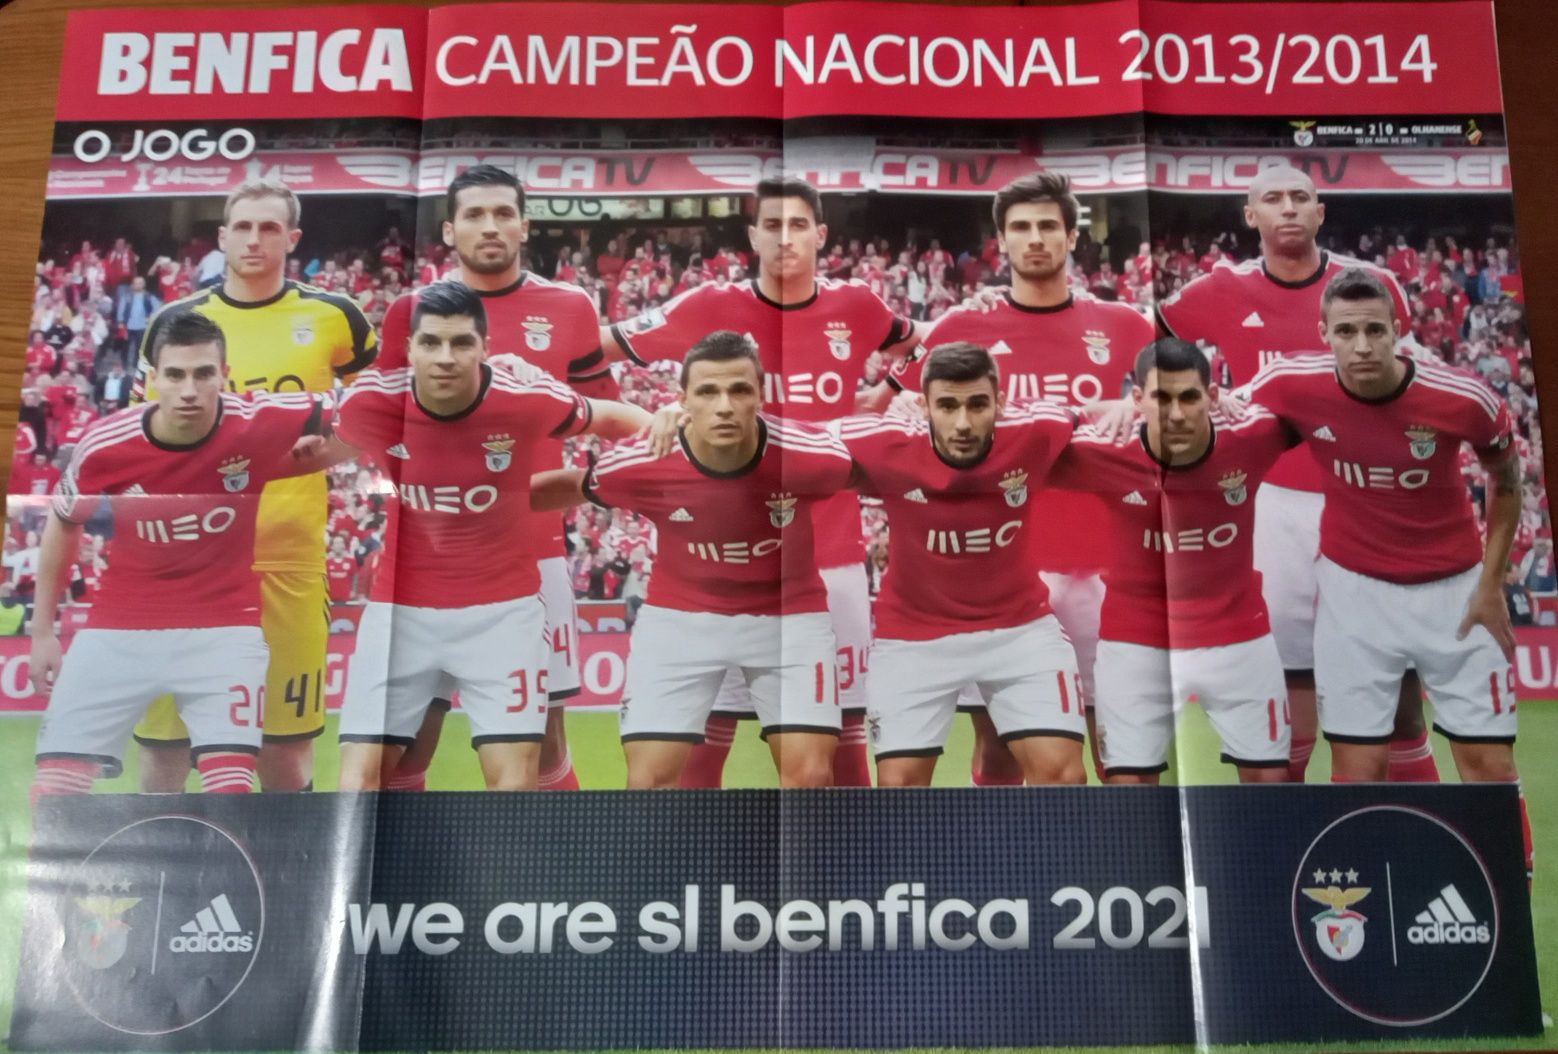 poster Benfica campeão nacional 2013/2014